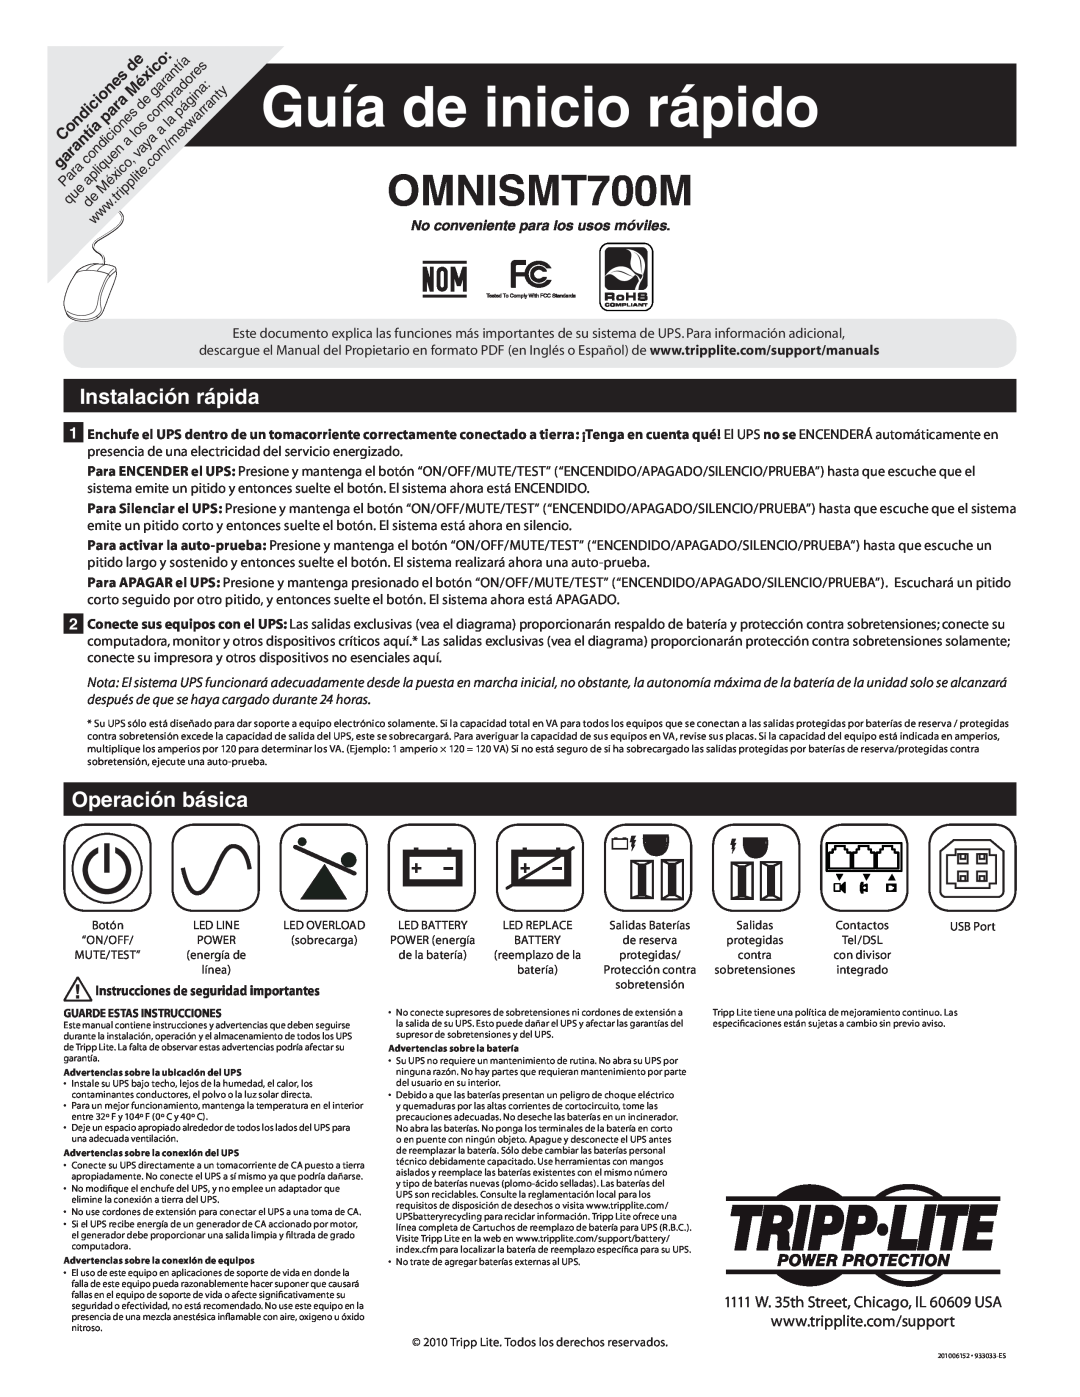 Tripp Lite OMNISMT700M Guía de inicio rápido, Instalación rápida, Operación básica, No conveniente para los usos móviles 